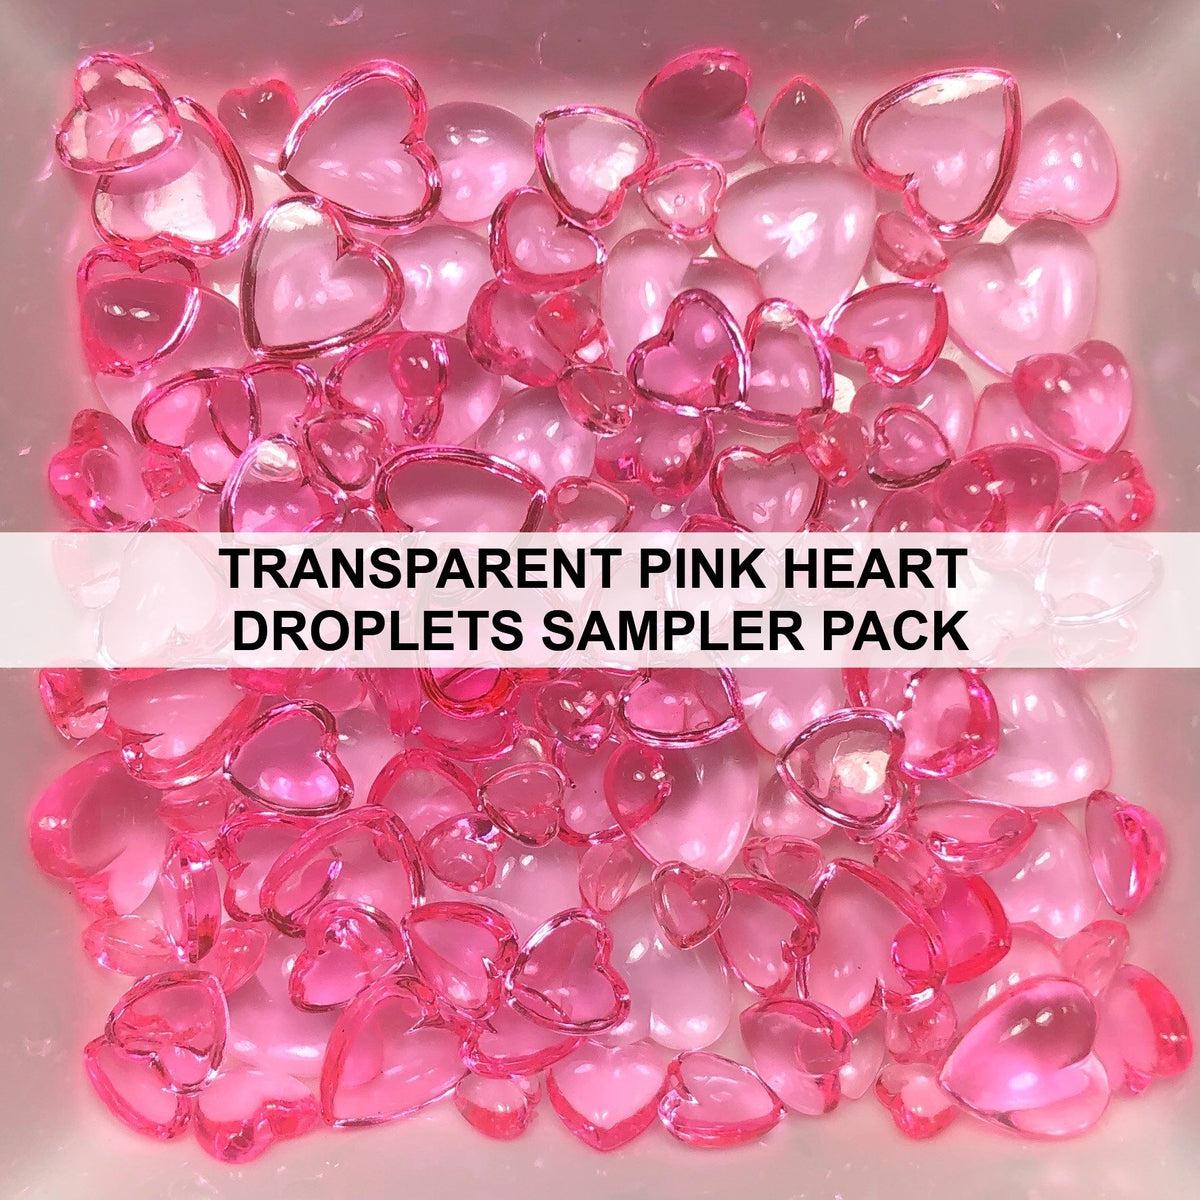 Transparent Pink Heart Droplets Sampler Pack